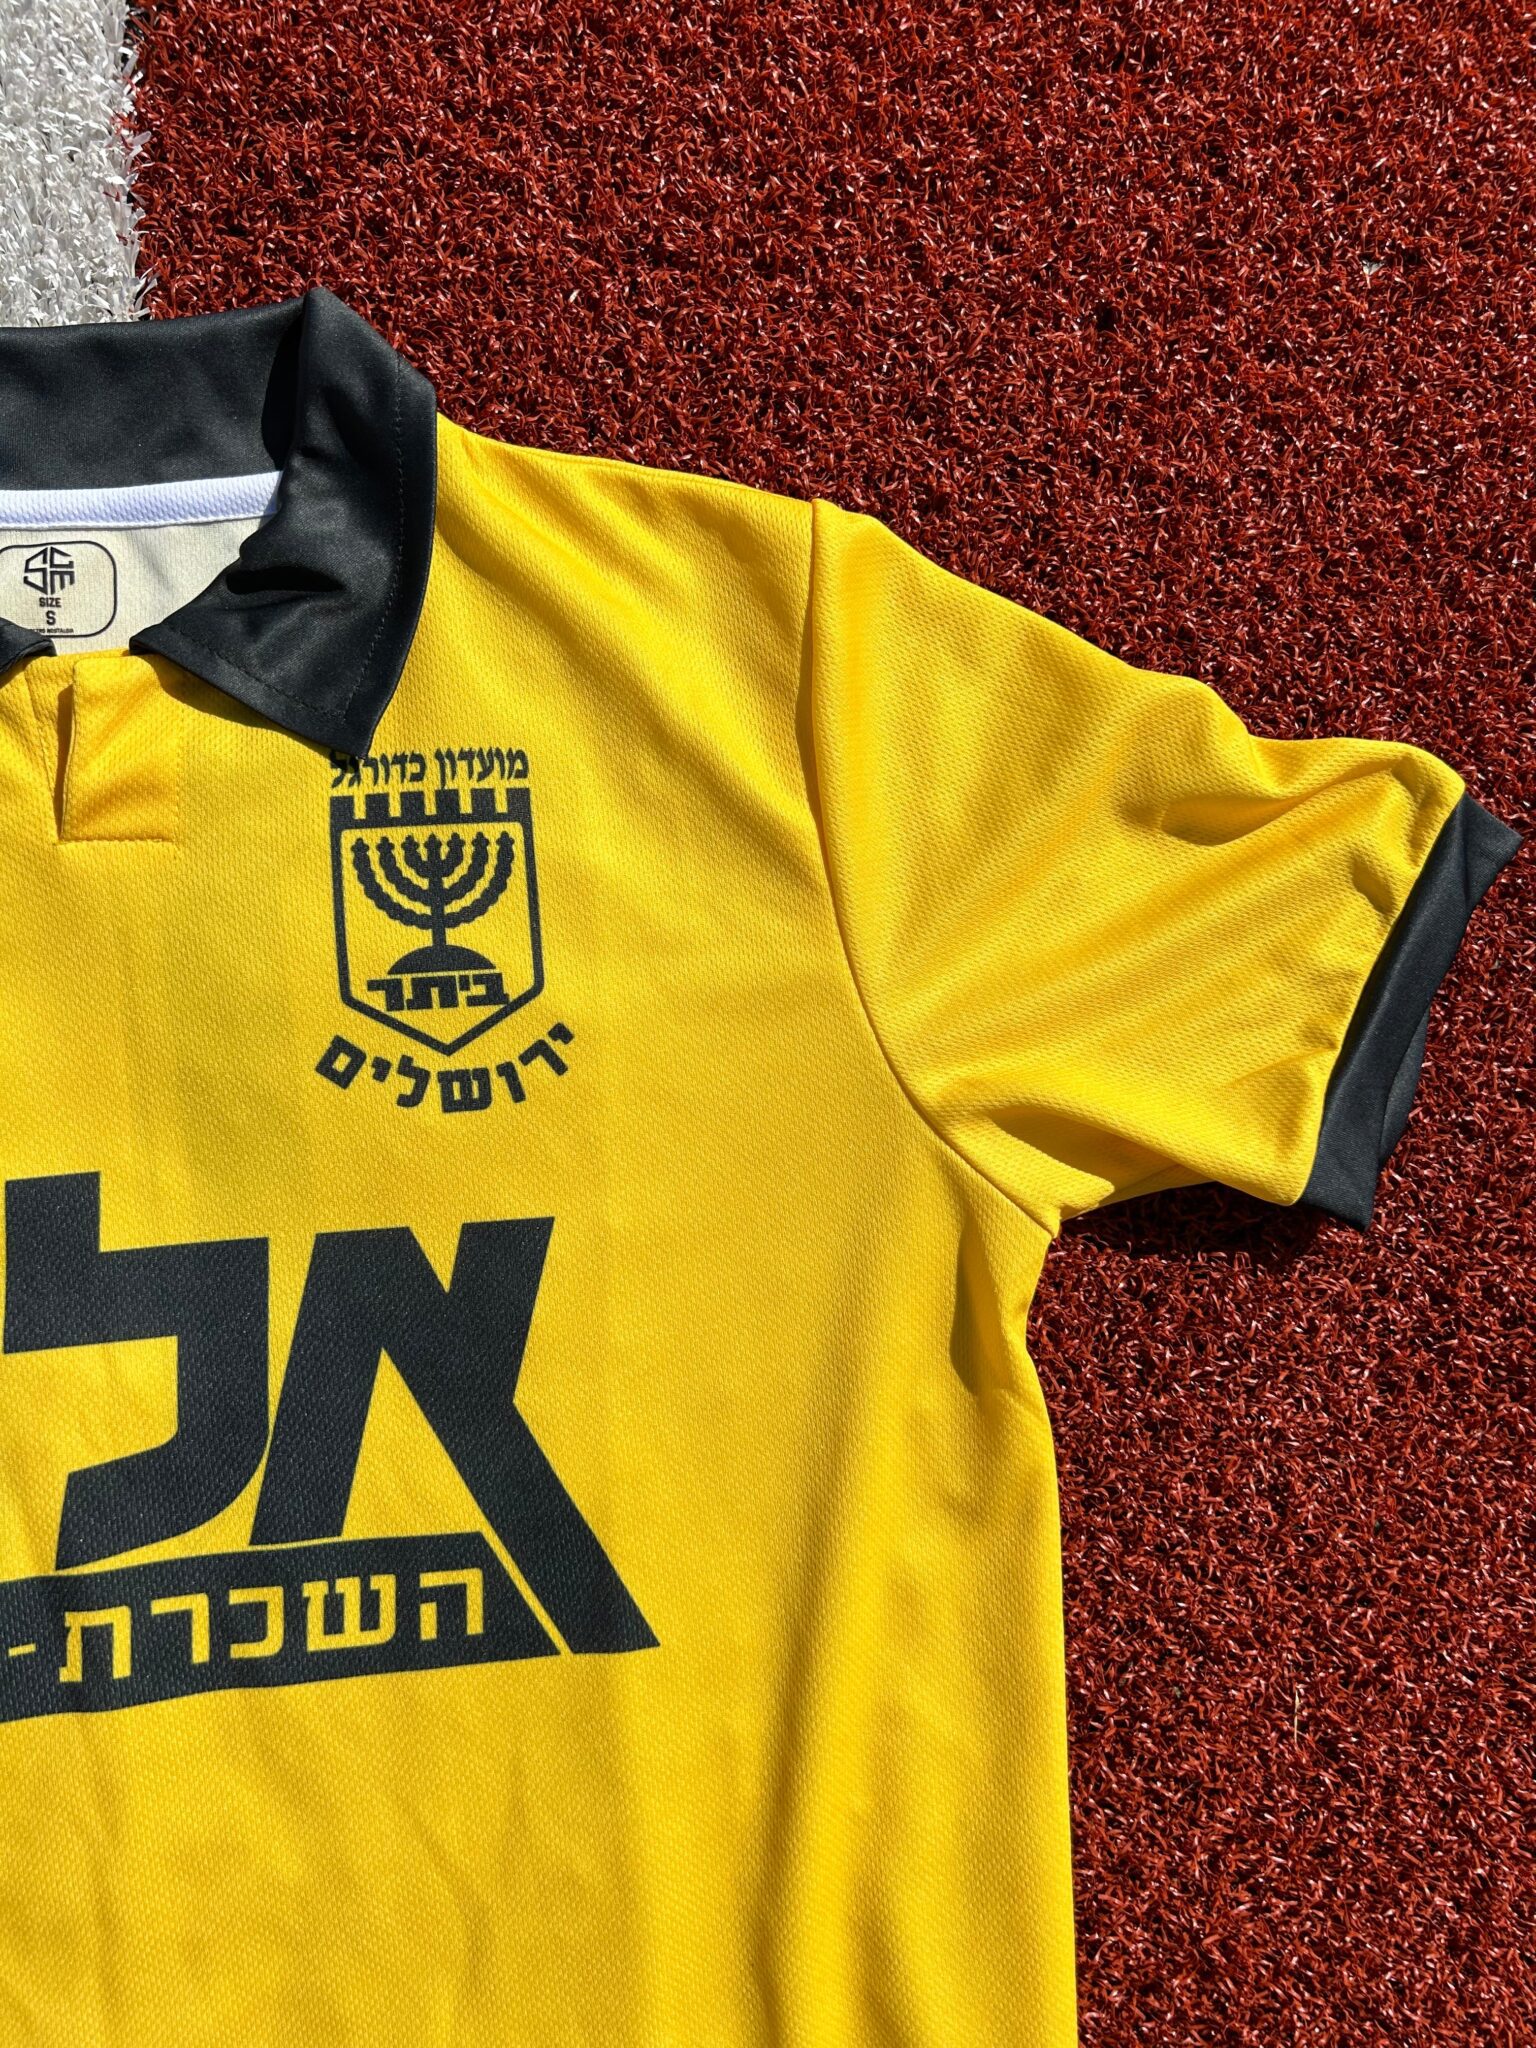 Beitar Jerusalem Football Jersey 1993/1994 Retro ביתר ירושלים : The Menorah - Sport Club Memories